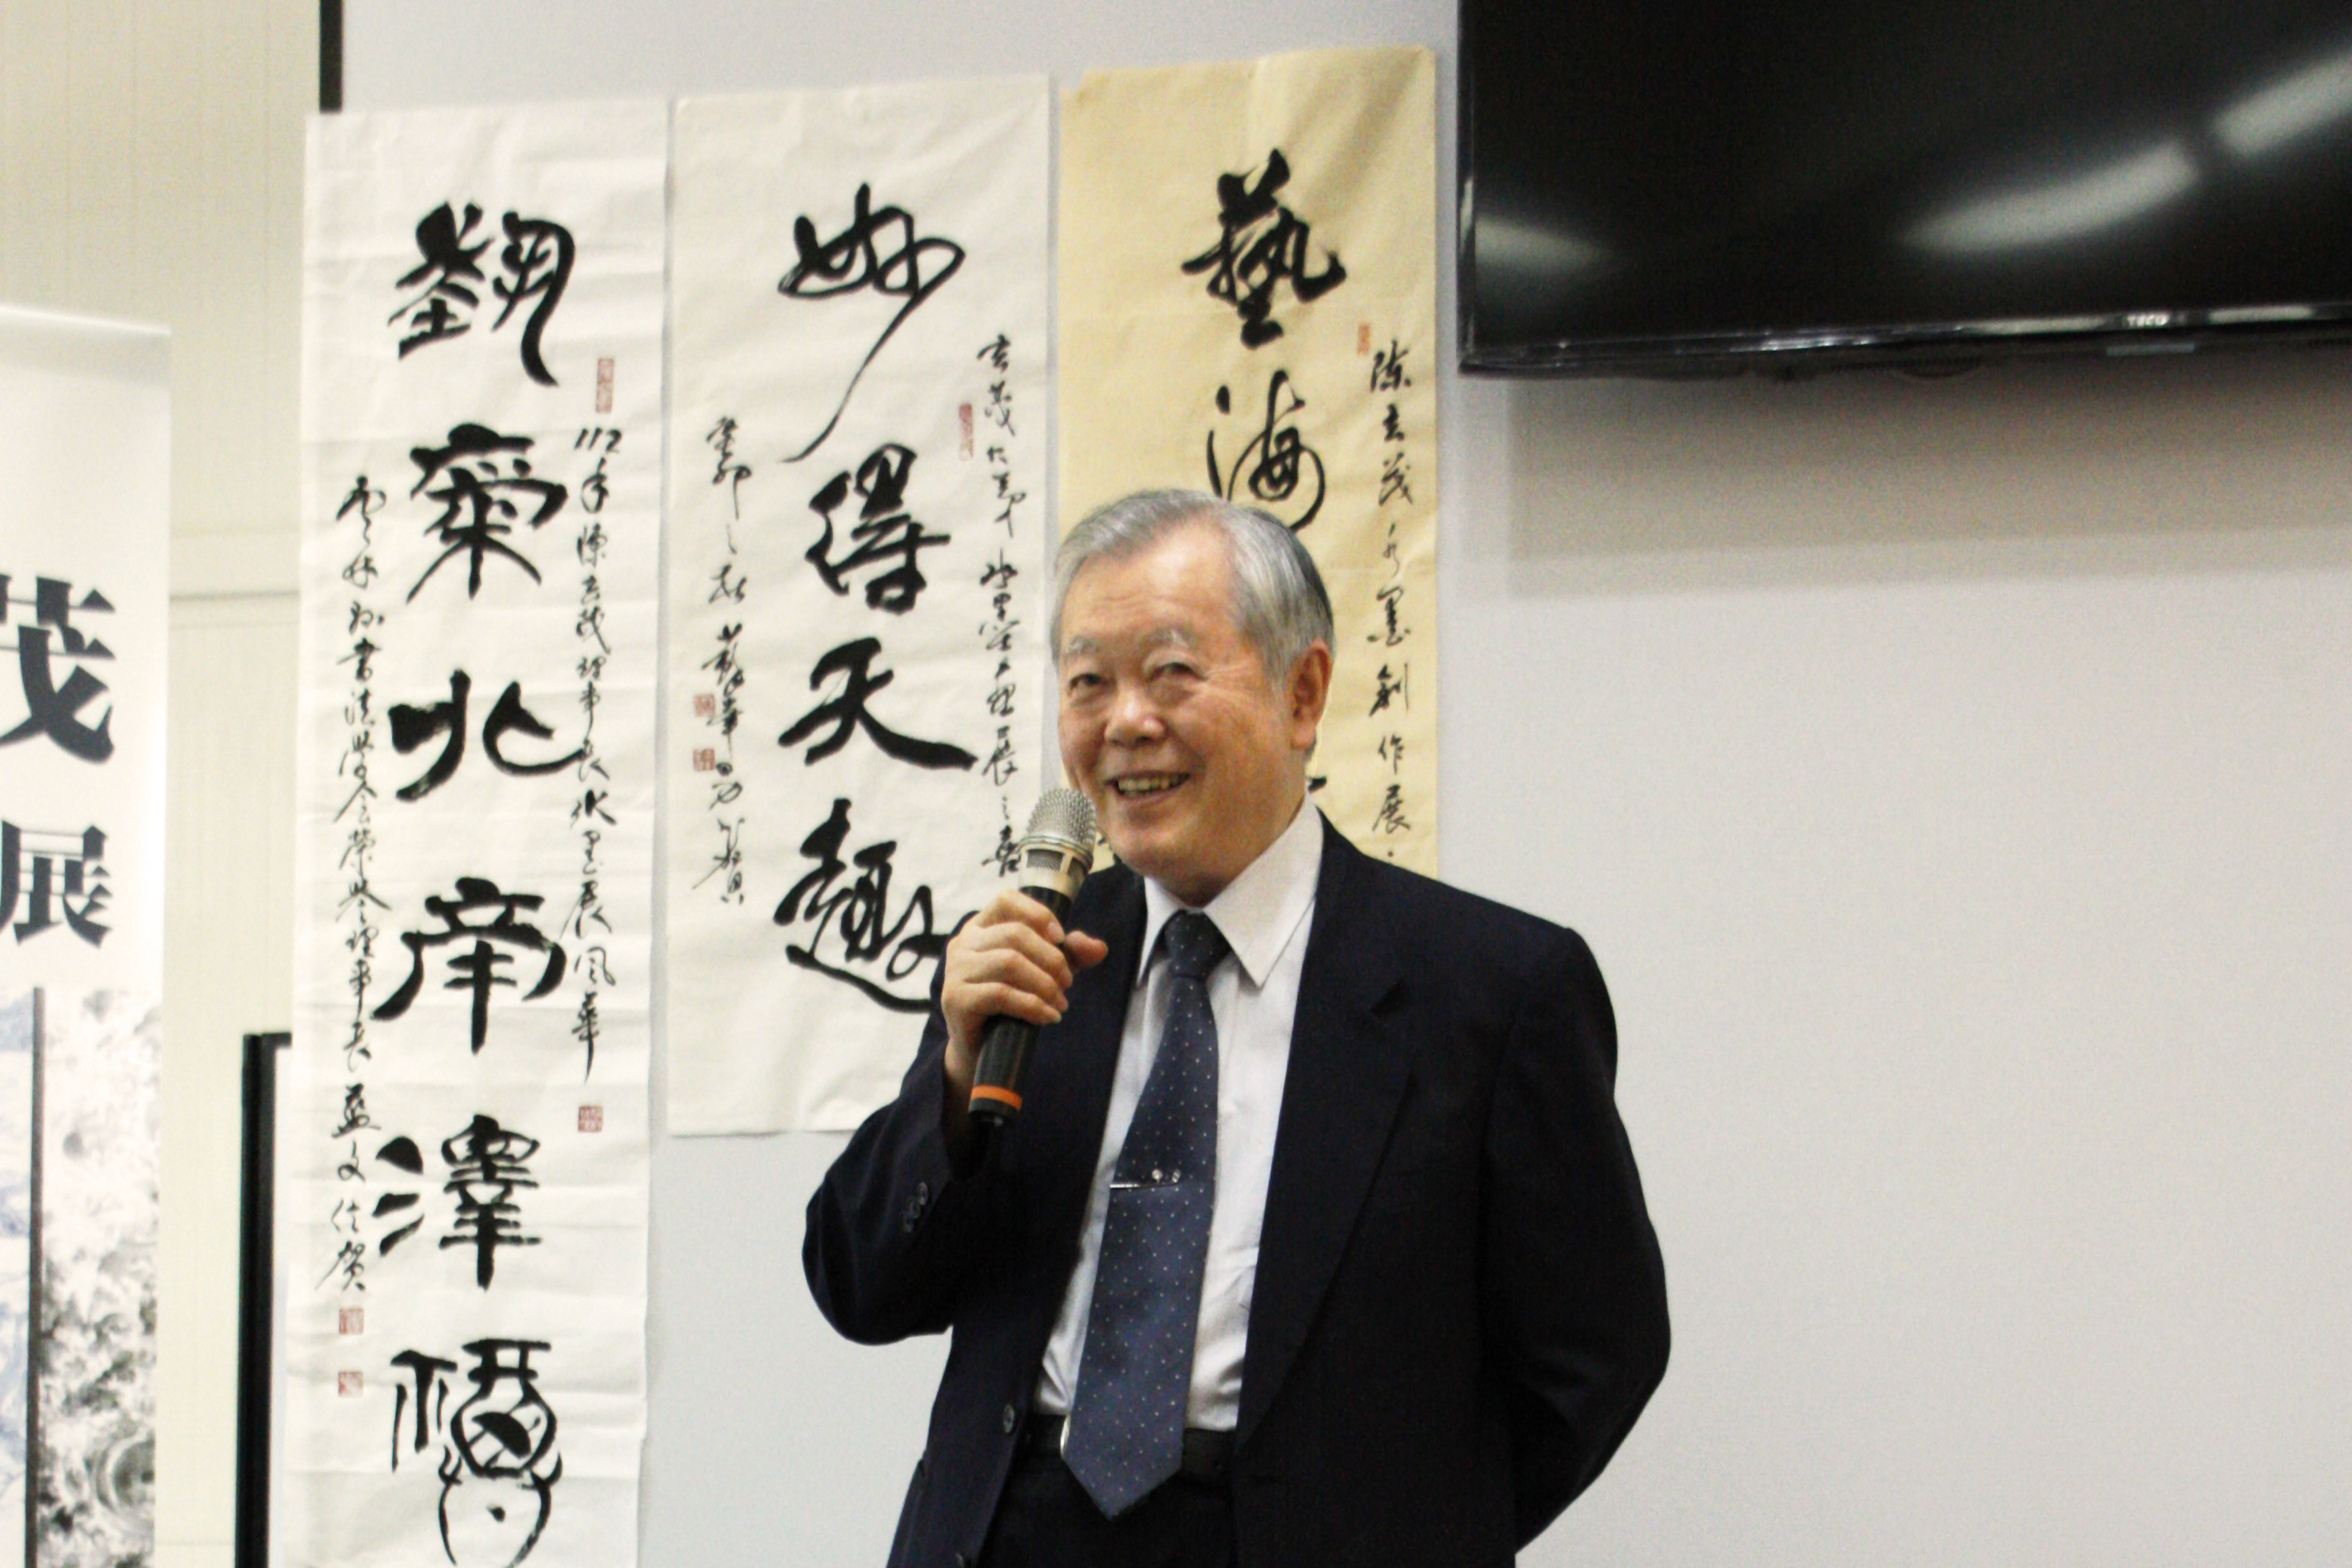 蘇峯男榮譽教授為同學解說山水畫與寫生的創作思想